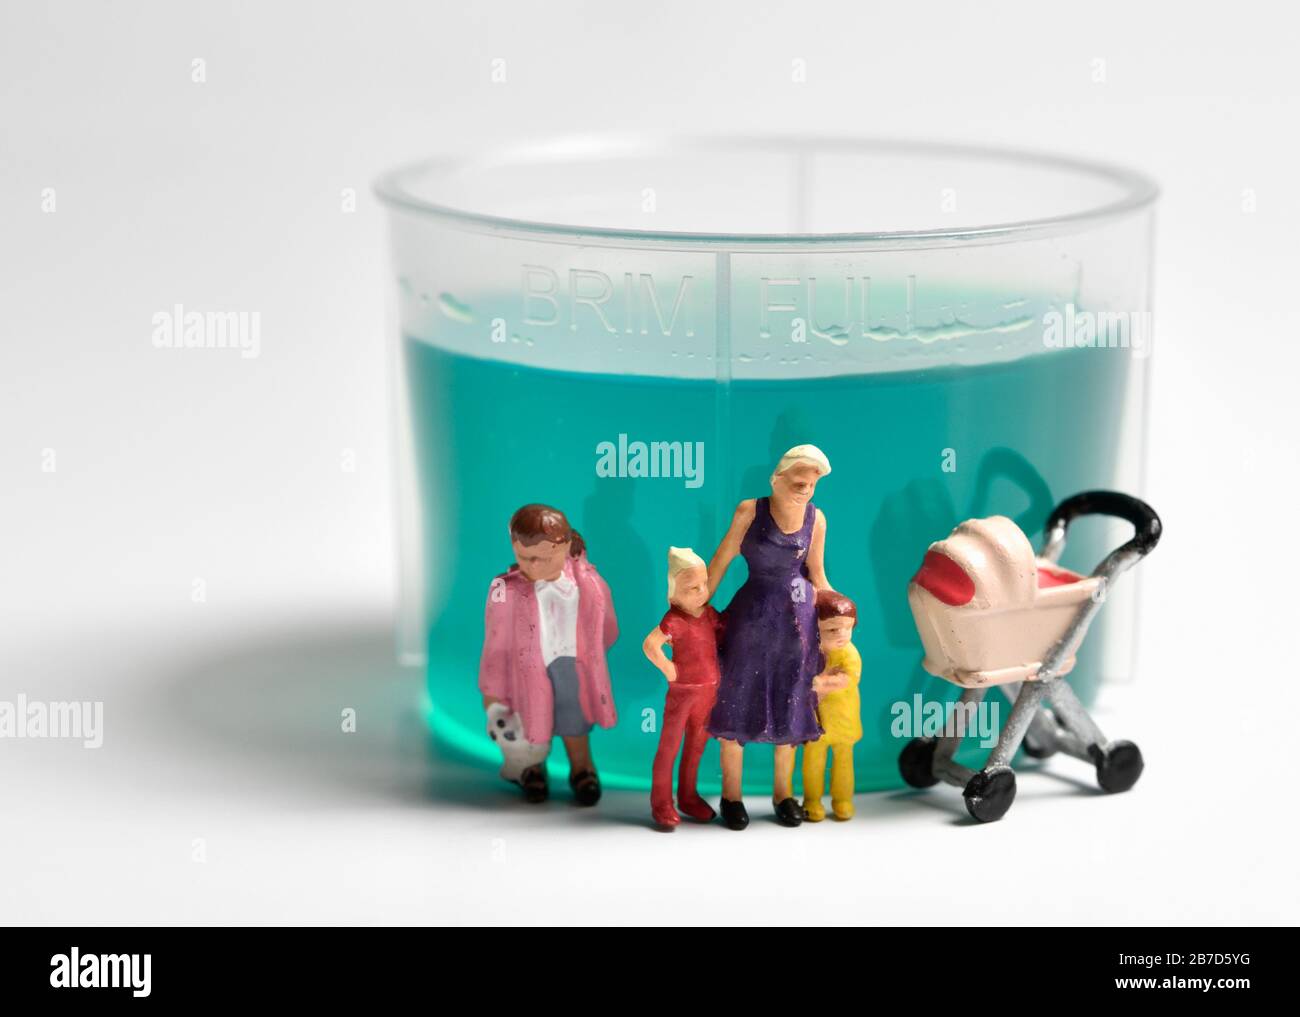 Miniatur-Figurin-Alleinerziehende, die vor einem Plastikbecher für flüssige Medikamente vor weißem Hintergrund steht. Stockfoto